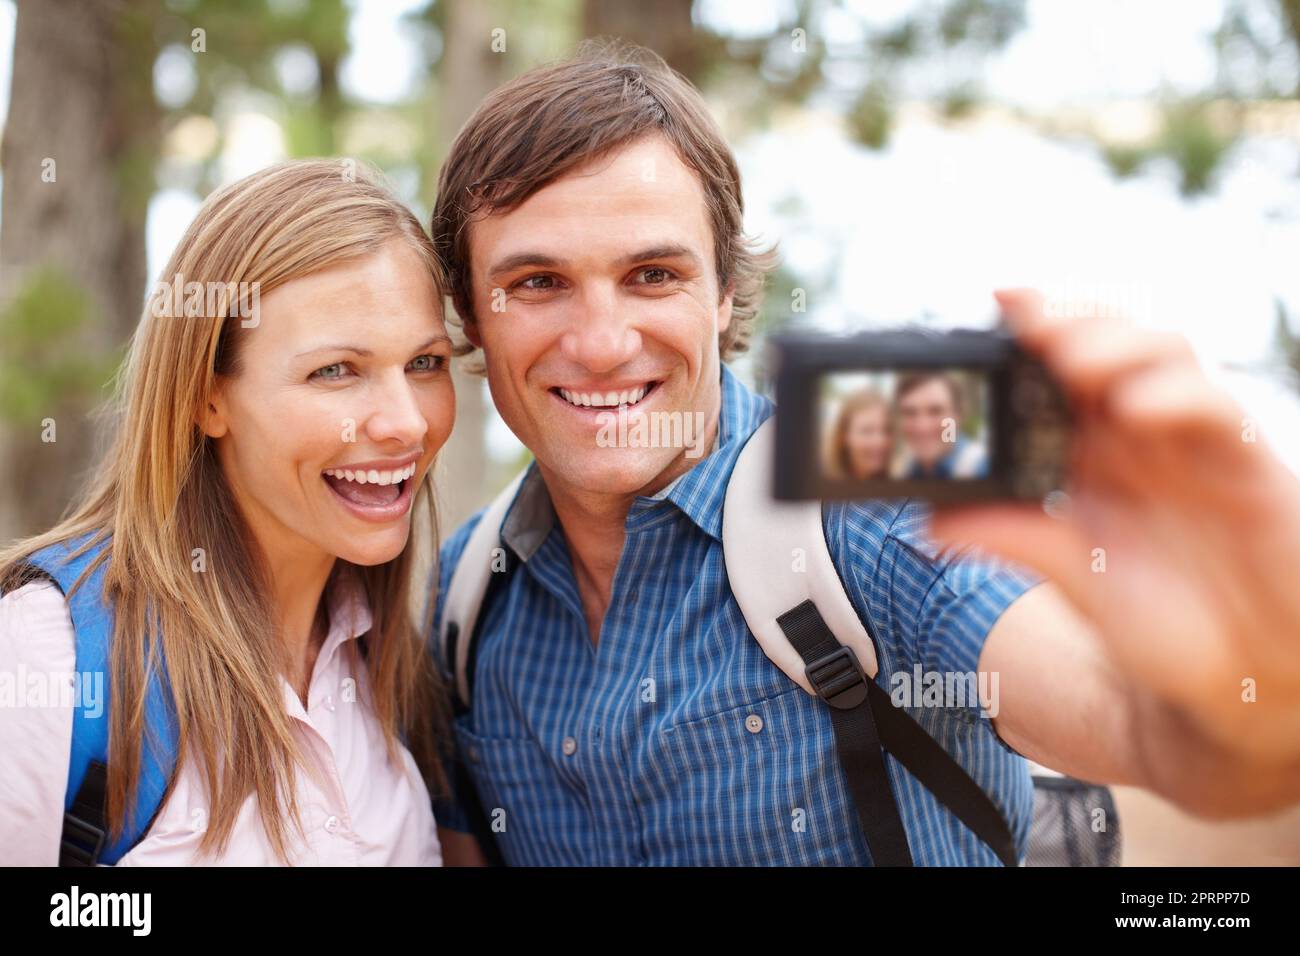 Autoportrait. Couple avec sac à dos regardant l'appareil photo et souriant avec l'homme prenant un clic sur une photo Banque D'Images